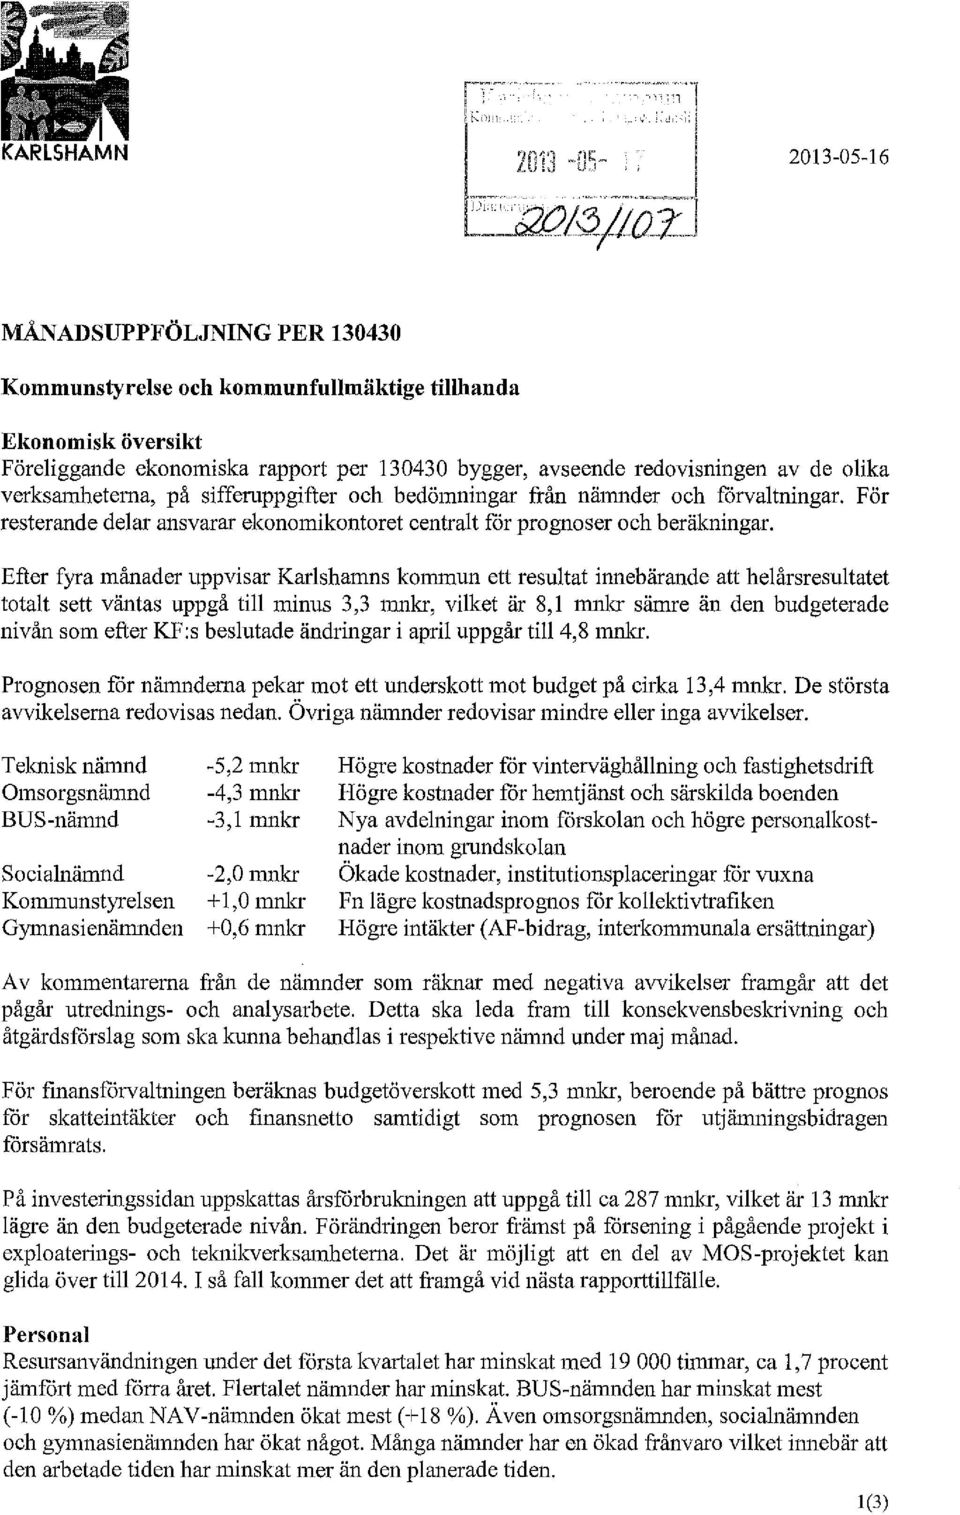 Efter fyra månader uppvisar Karlshamns kommun ett resultat innebärande att helårsresultatet totalt sett väntas uppgå till minus 3,3 mnkr, vilket är 8,1 mnlcr sämre än den budgeterade nivån som efter